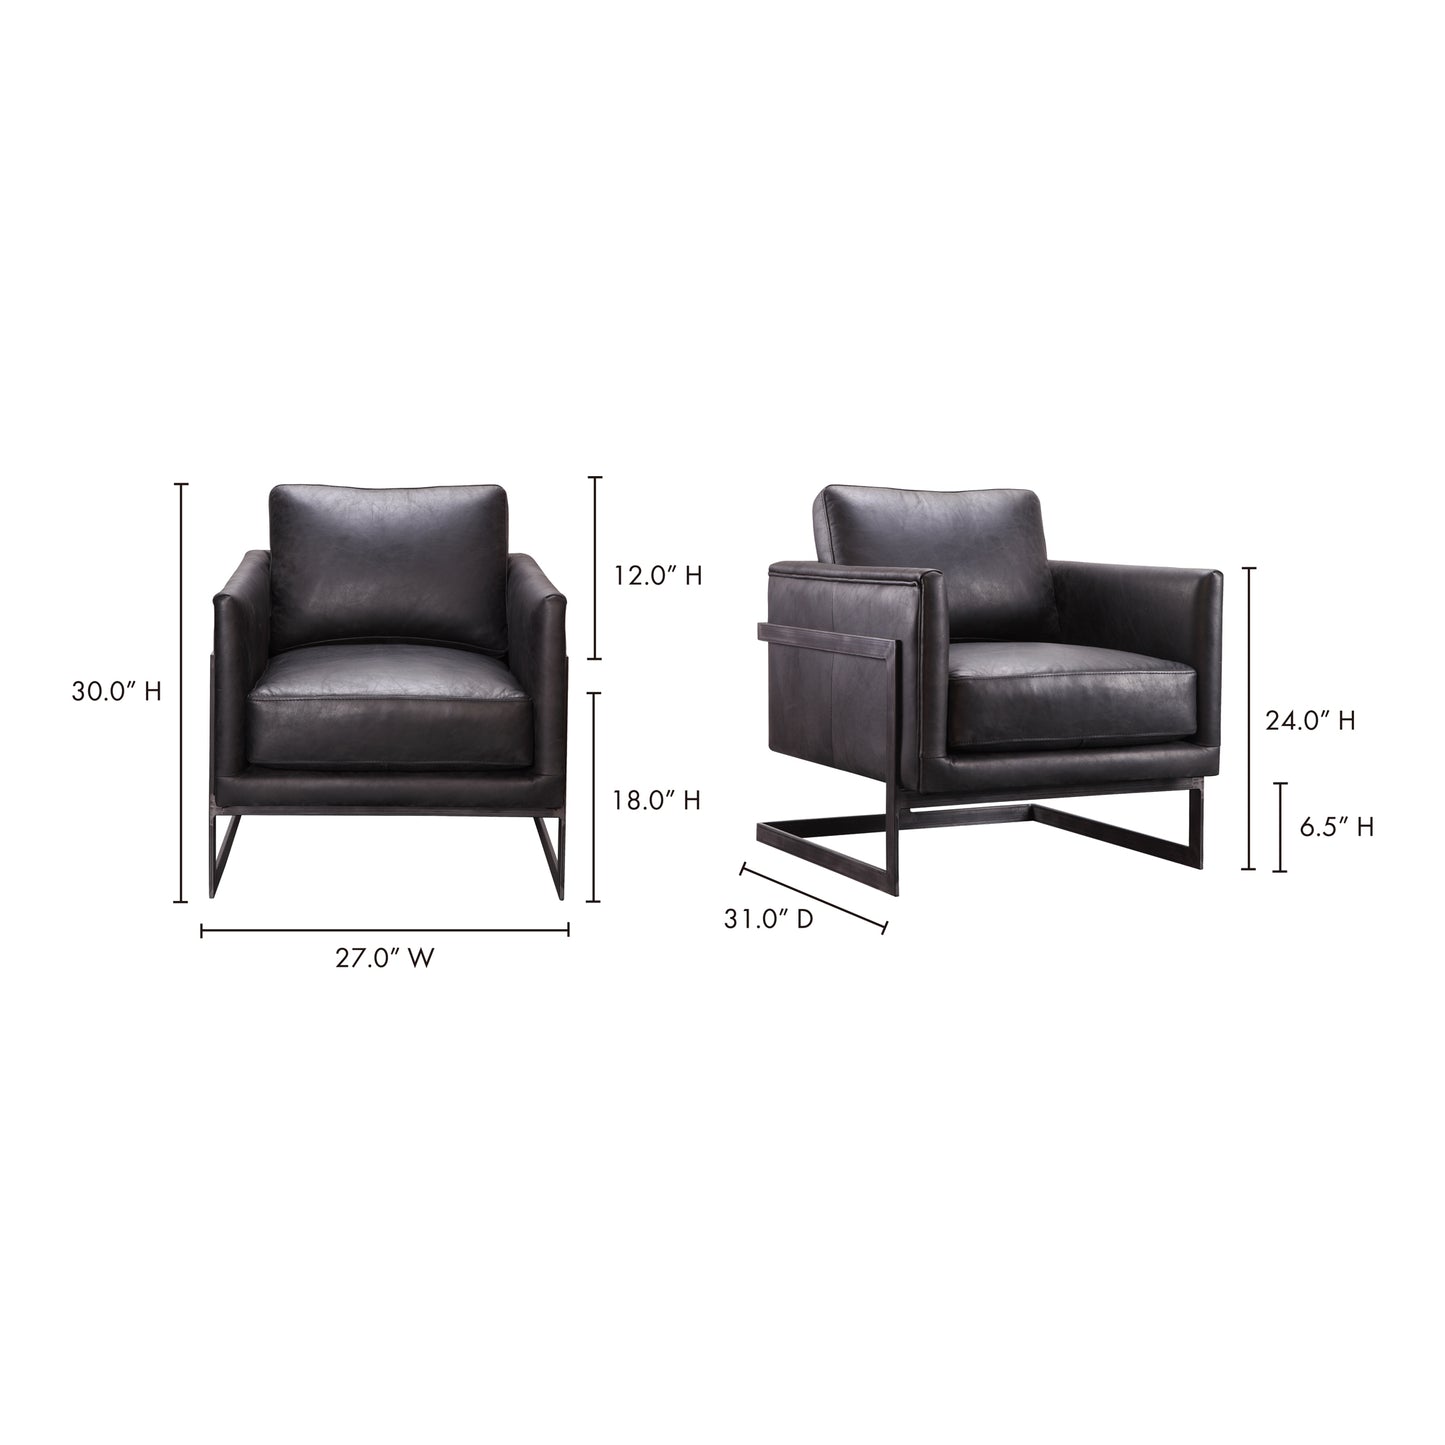 Luxley Club Chair Onyx Black Leather